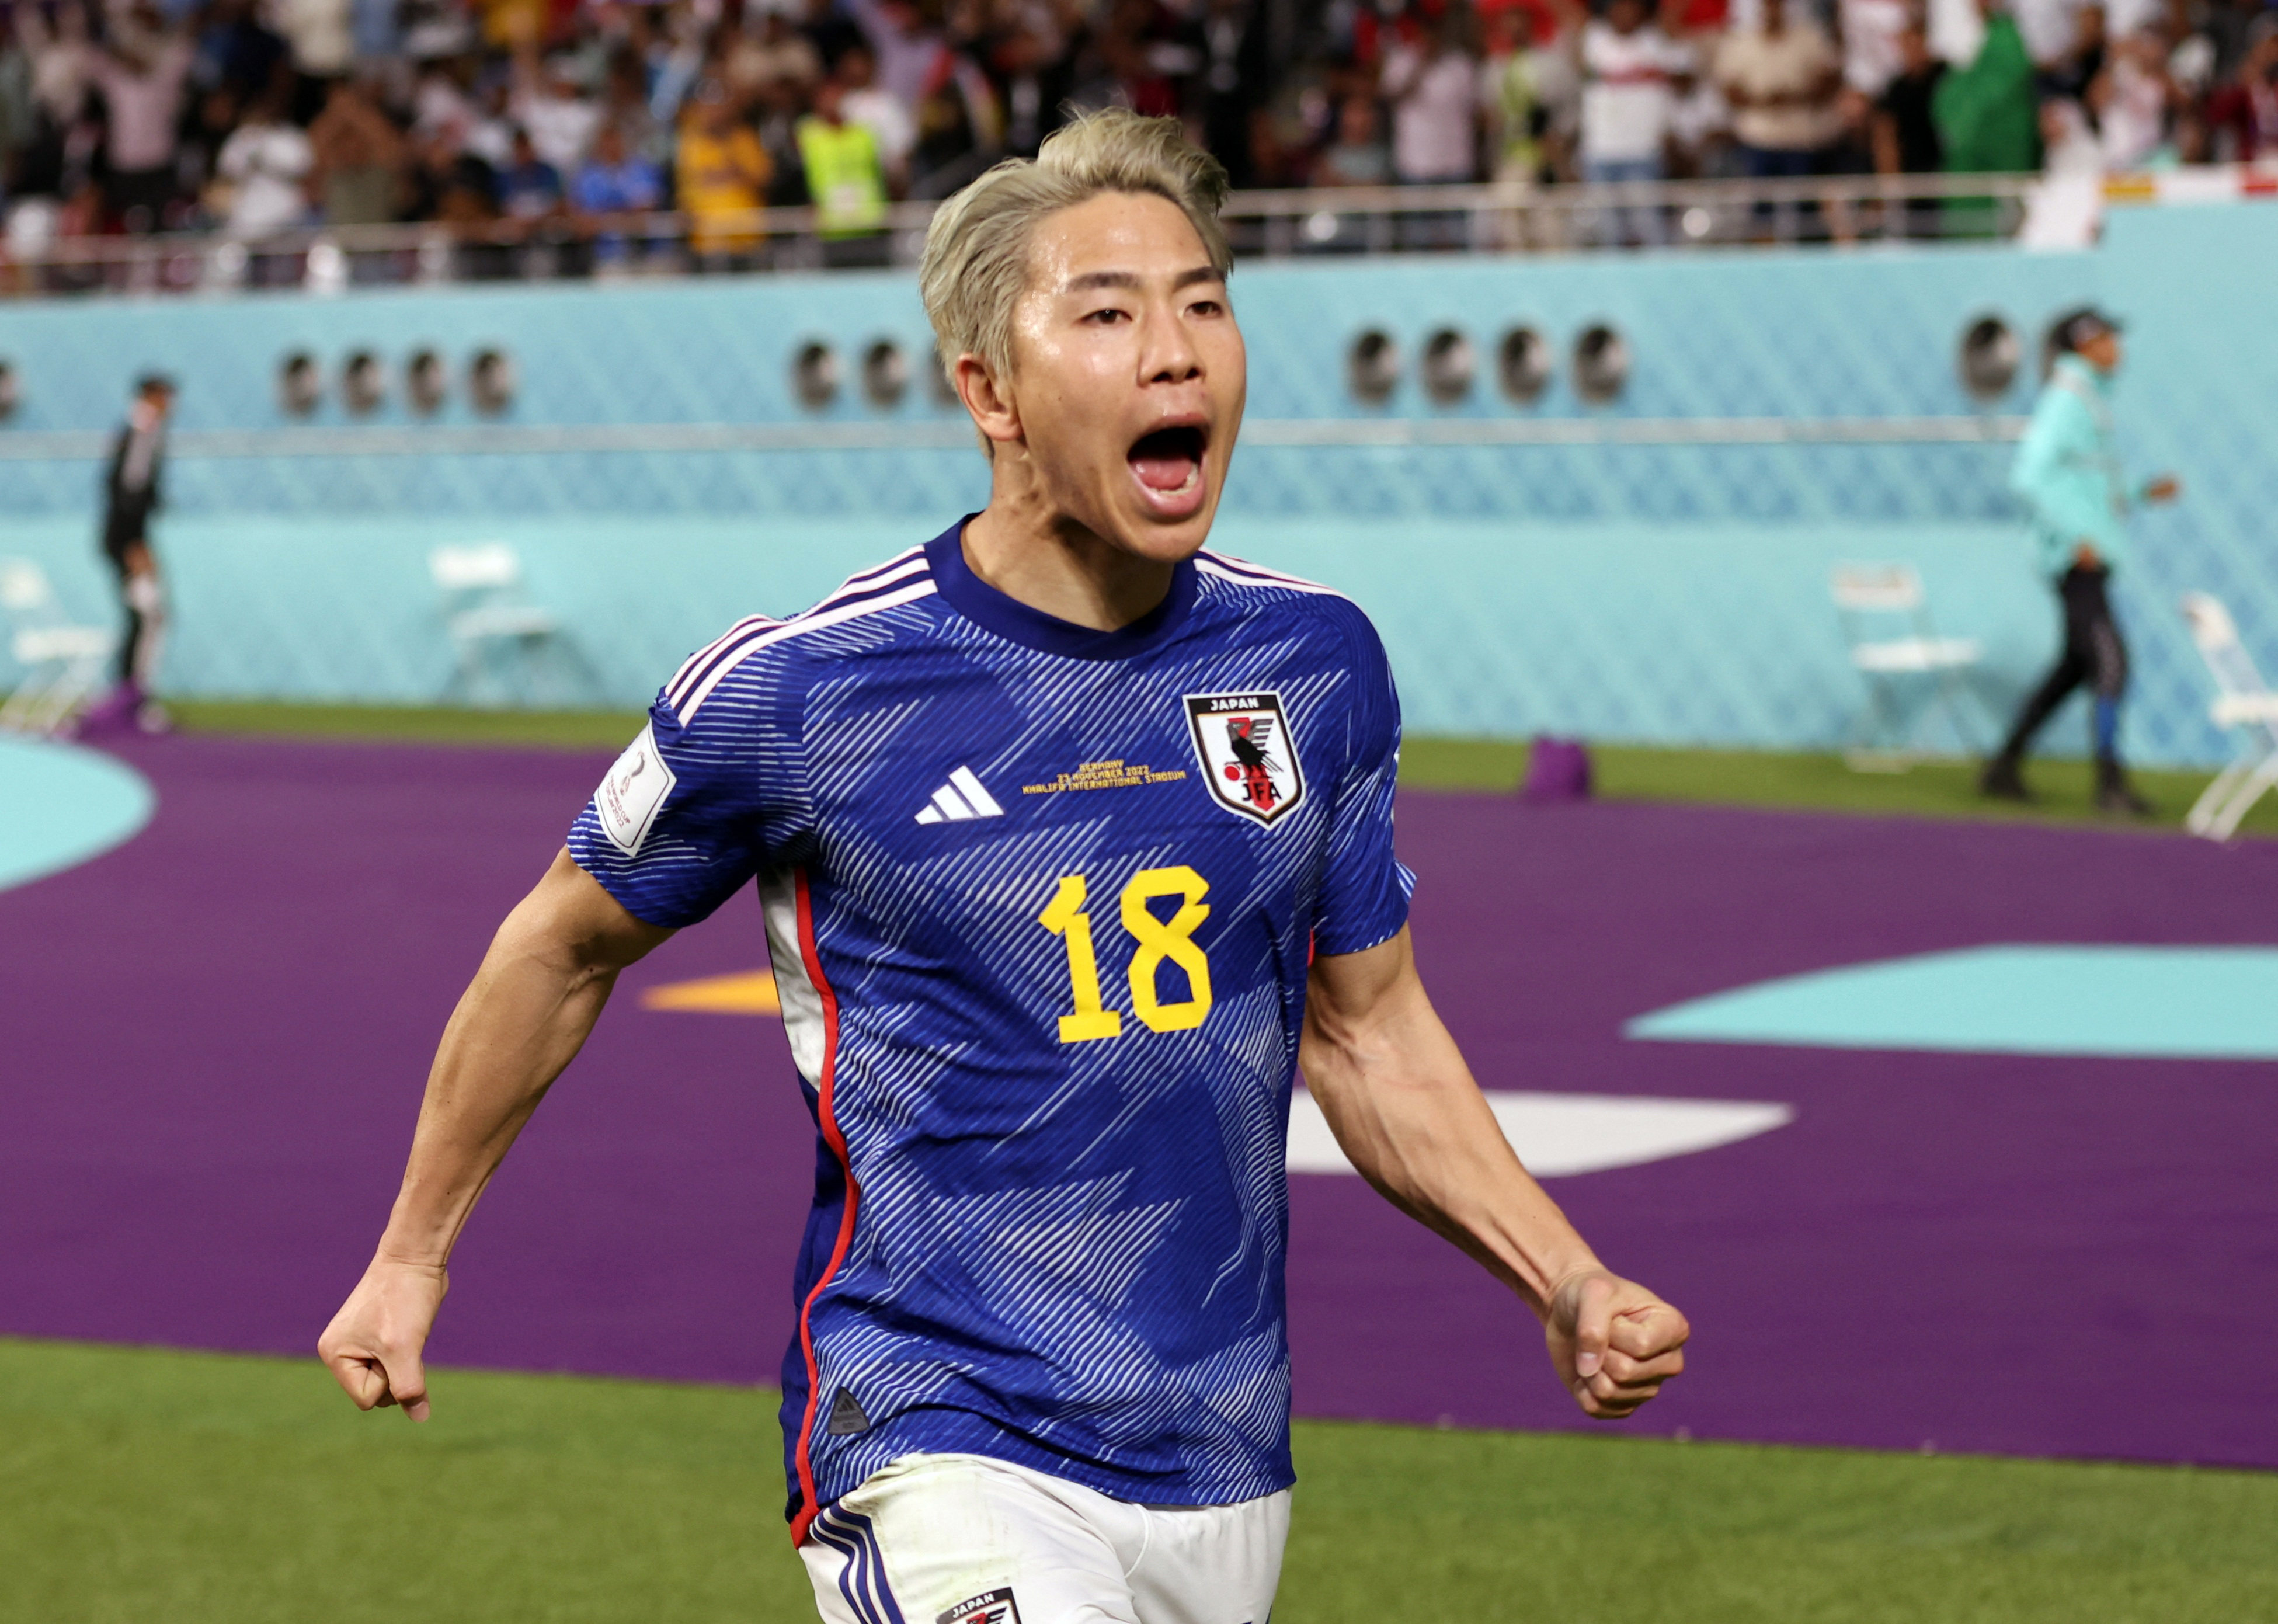 Doha:Japan's Ritsu Doan celebrates after scoring his side's opening goal.